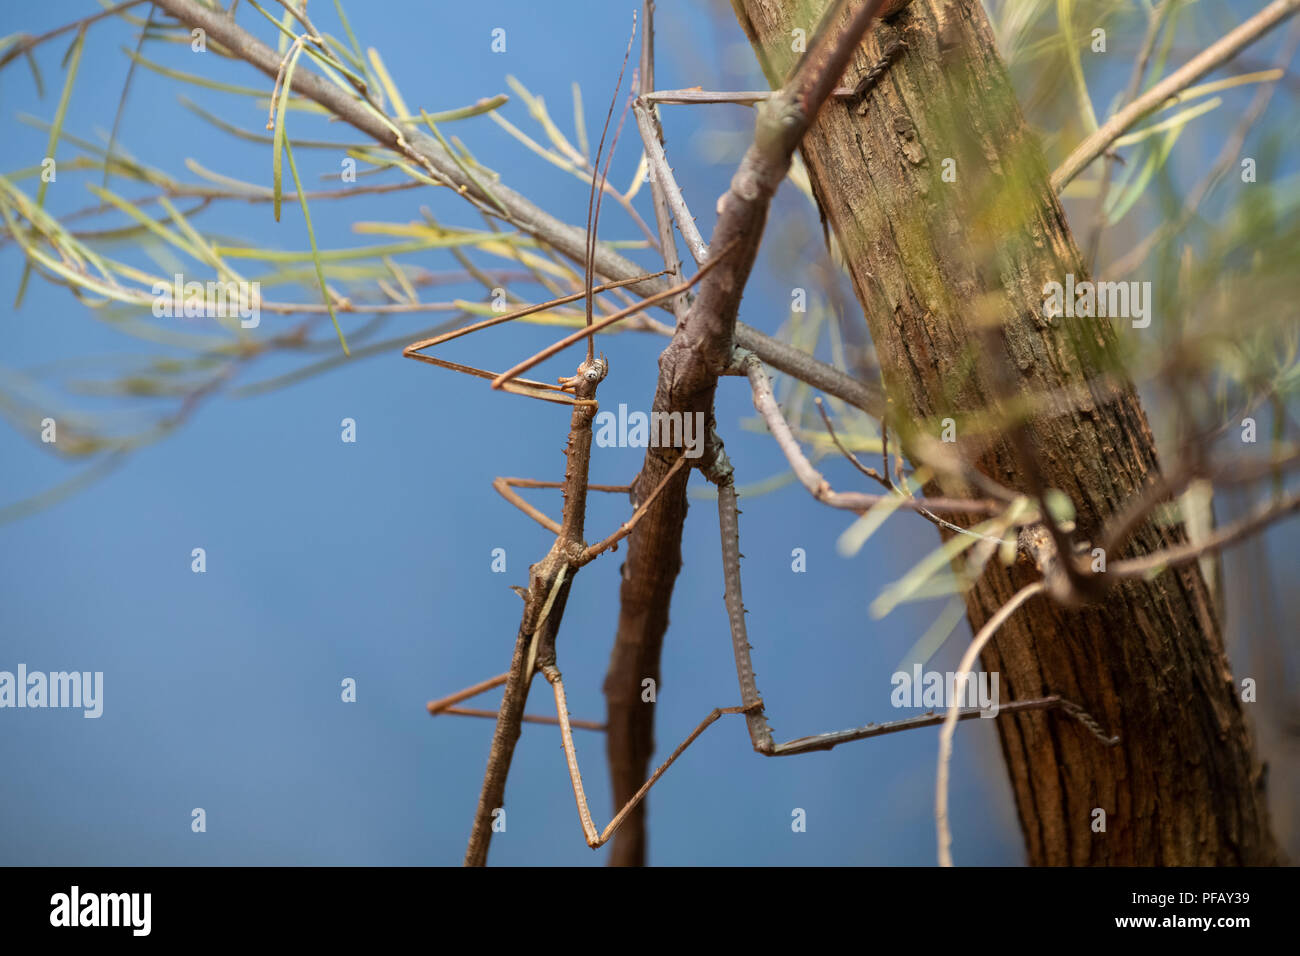 Australien, Northern Territory, Alice Springs. Zwei Akazie stick Insekten auf der Branche. Stockfoto